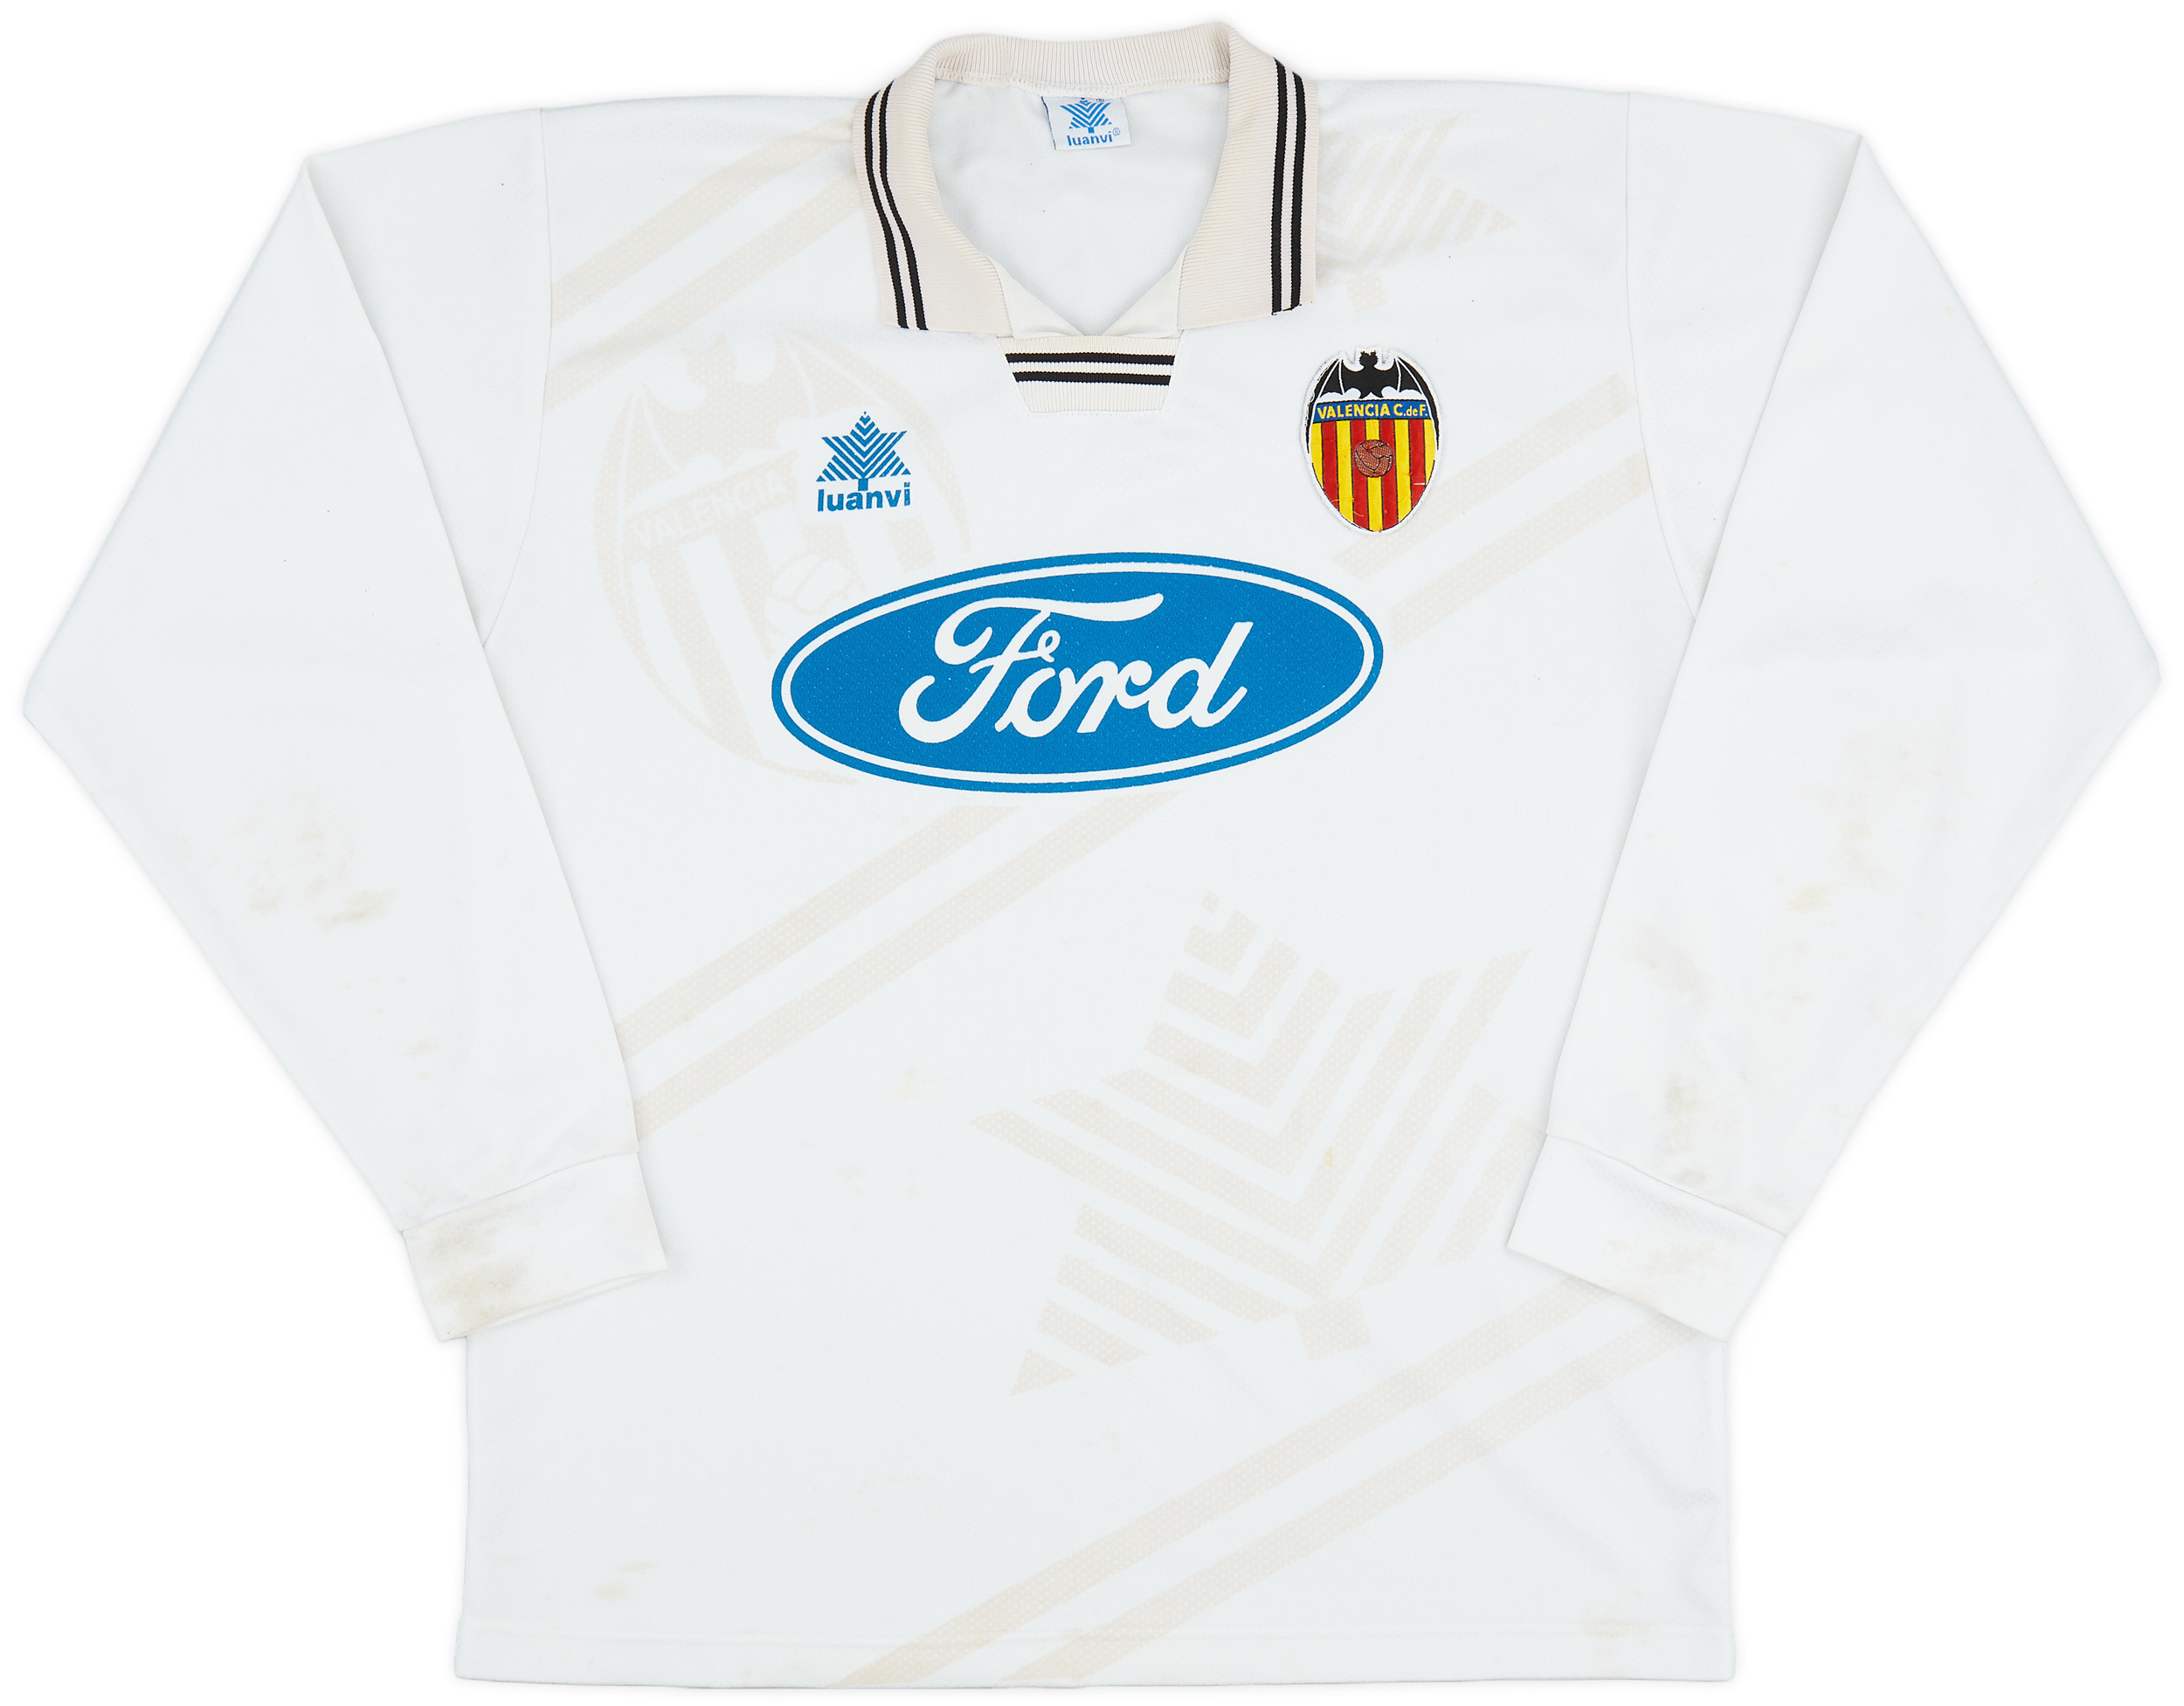 1995-96 Valencia Home Shirt - 5/10 - (/)